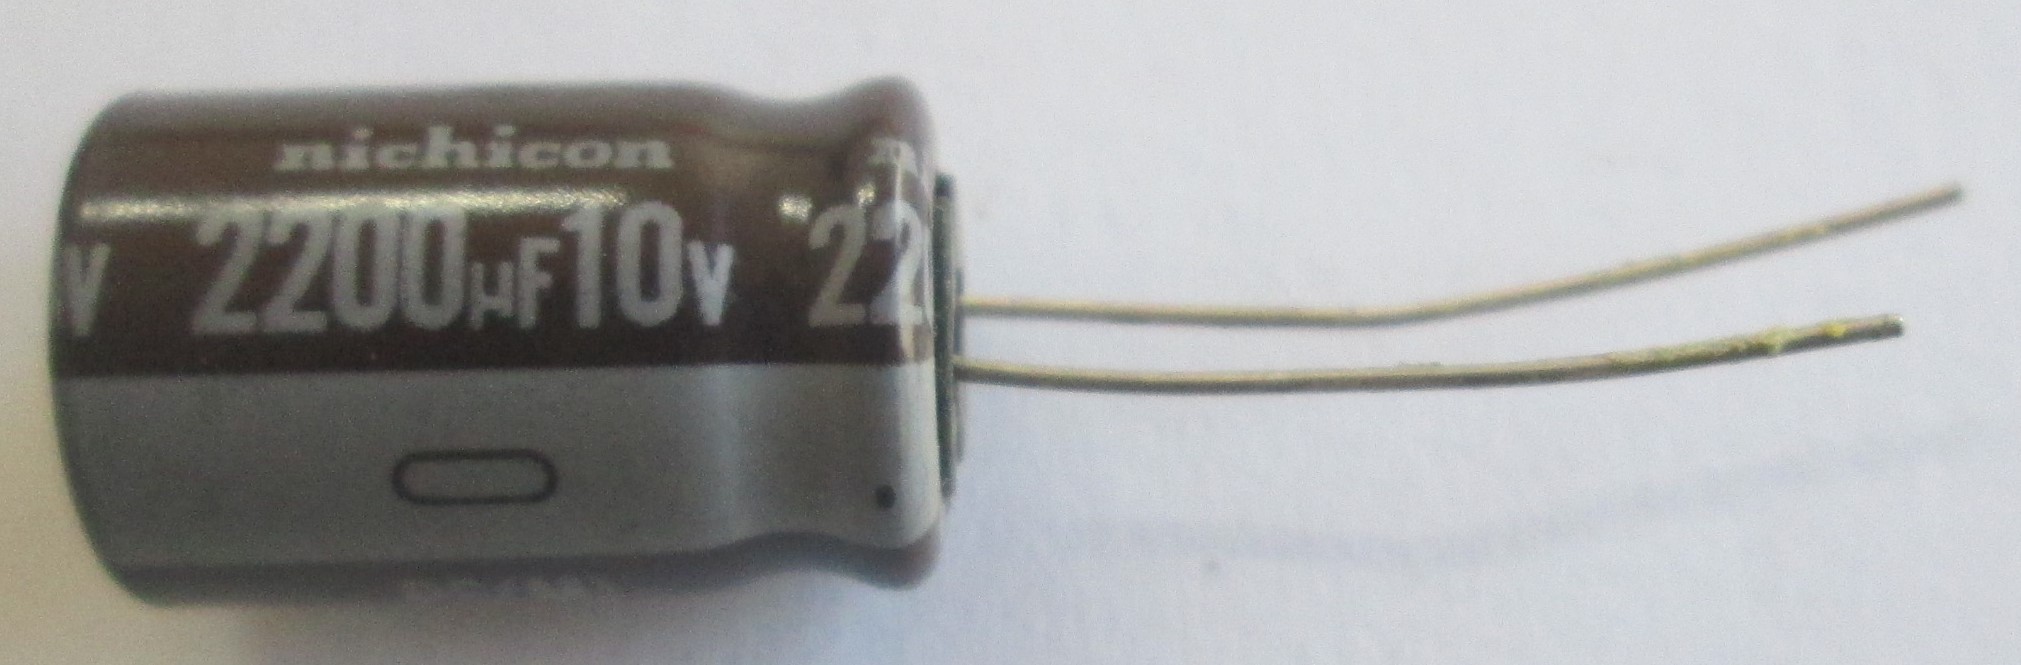 خازن الکترولیت 2200uF/10v